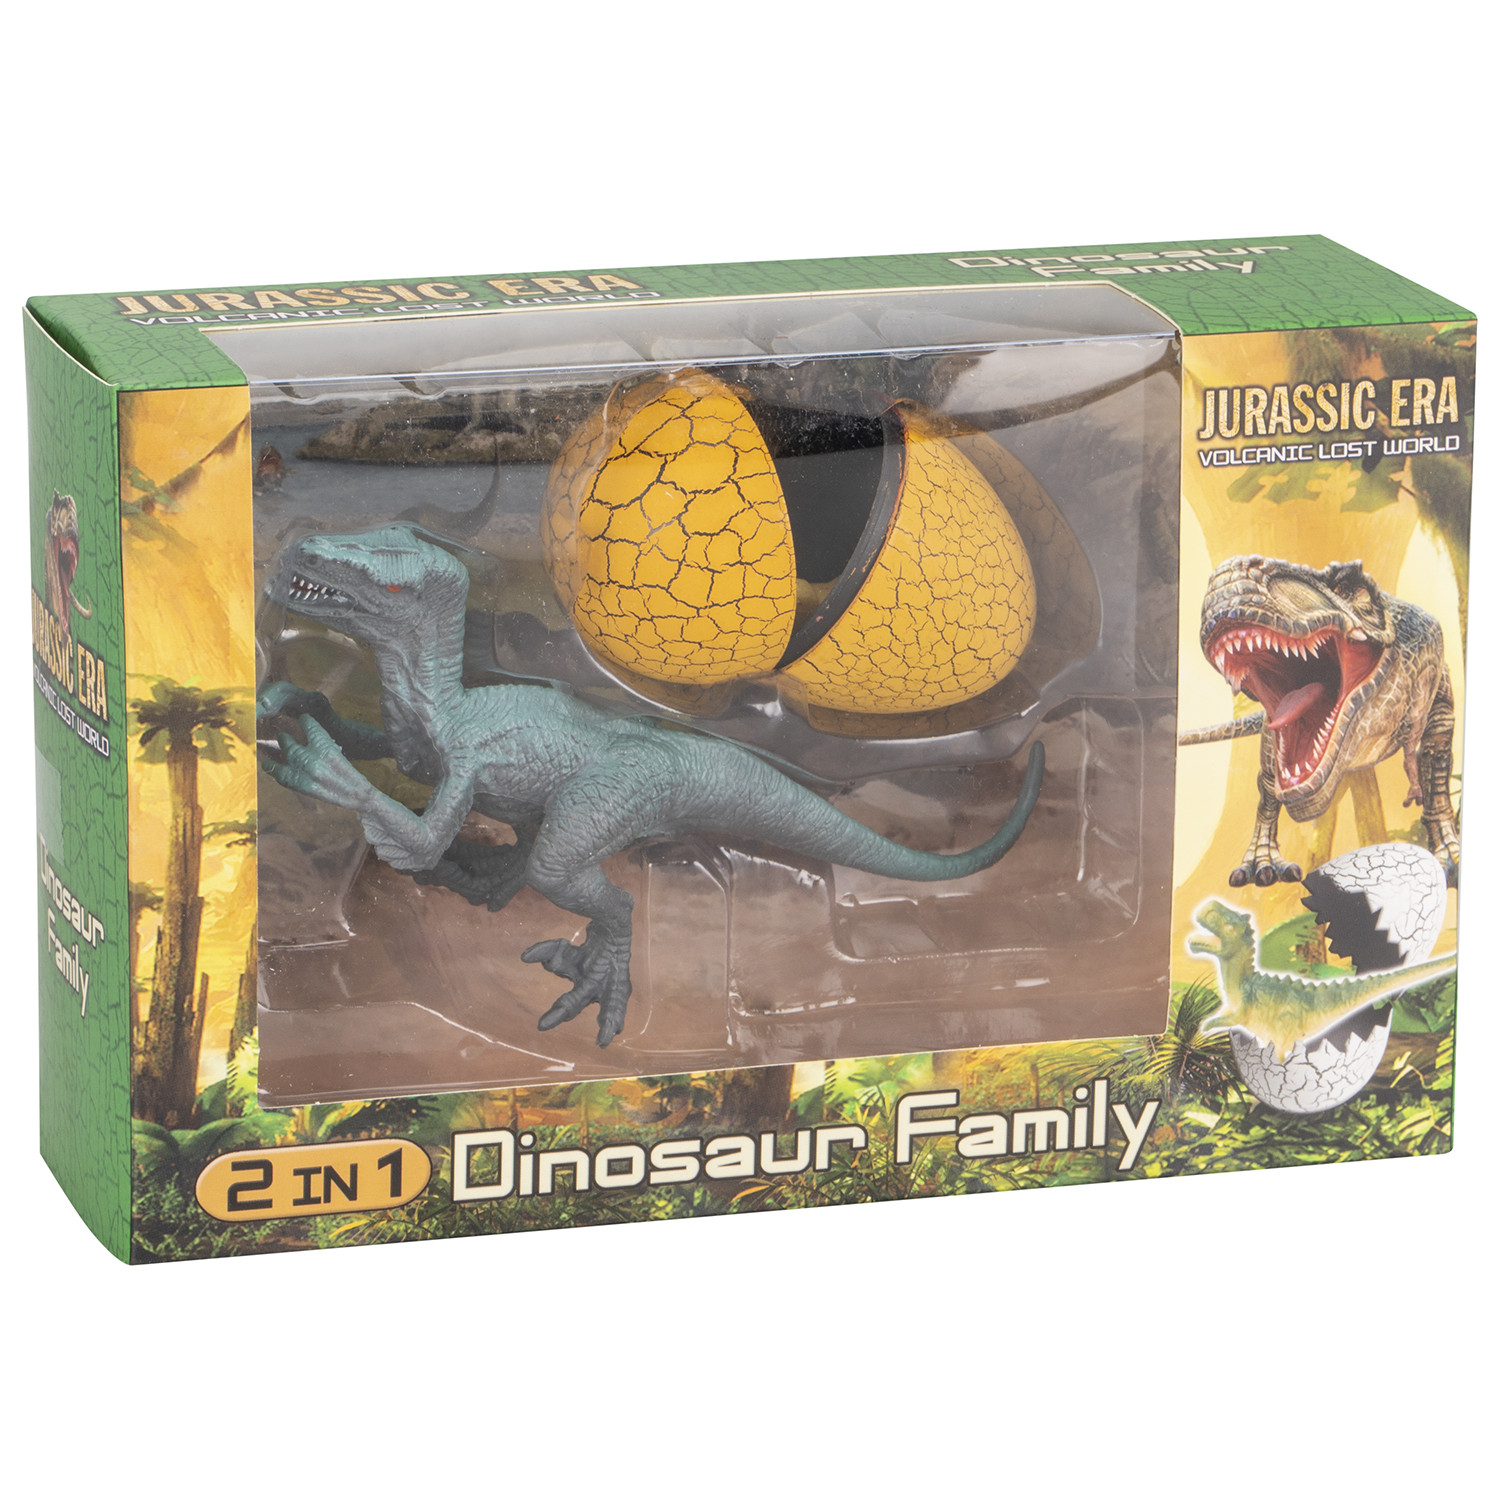 Everyday 2 in 1 Dinosaur Family Egg Image 1